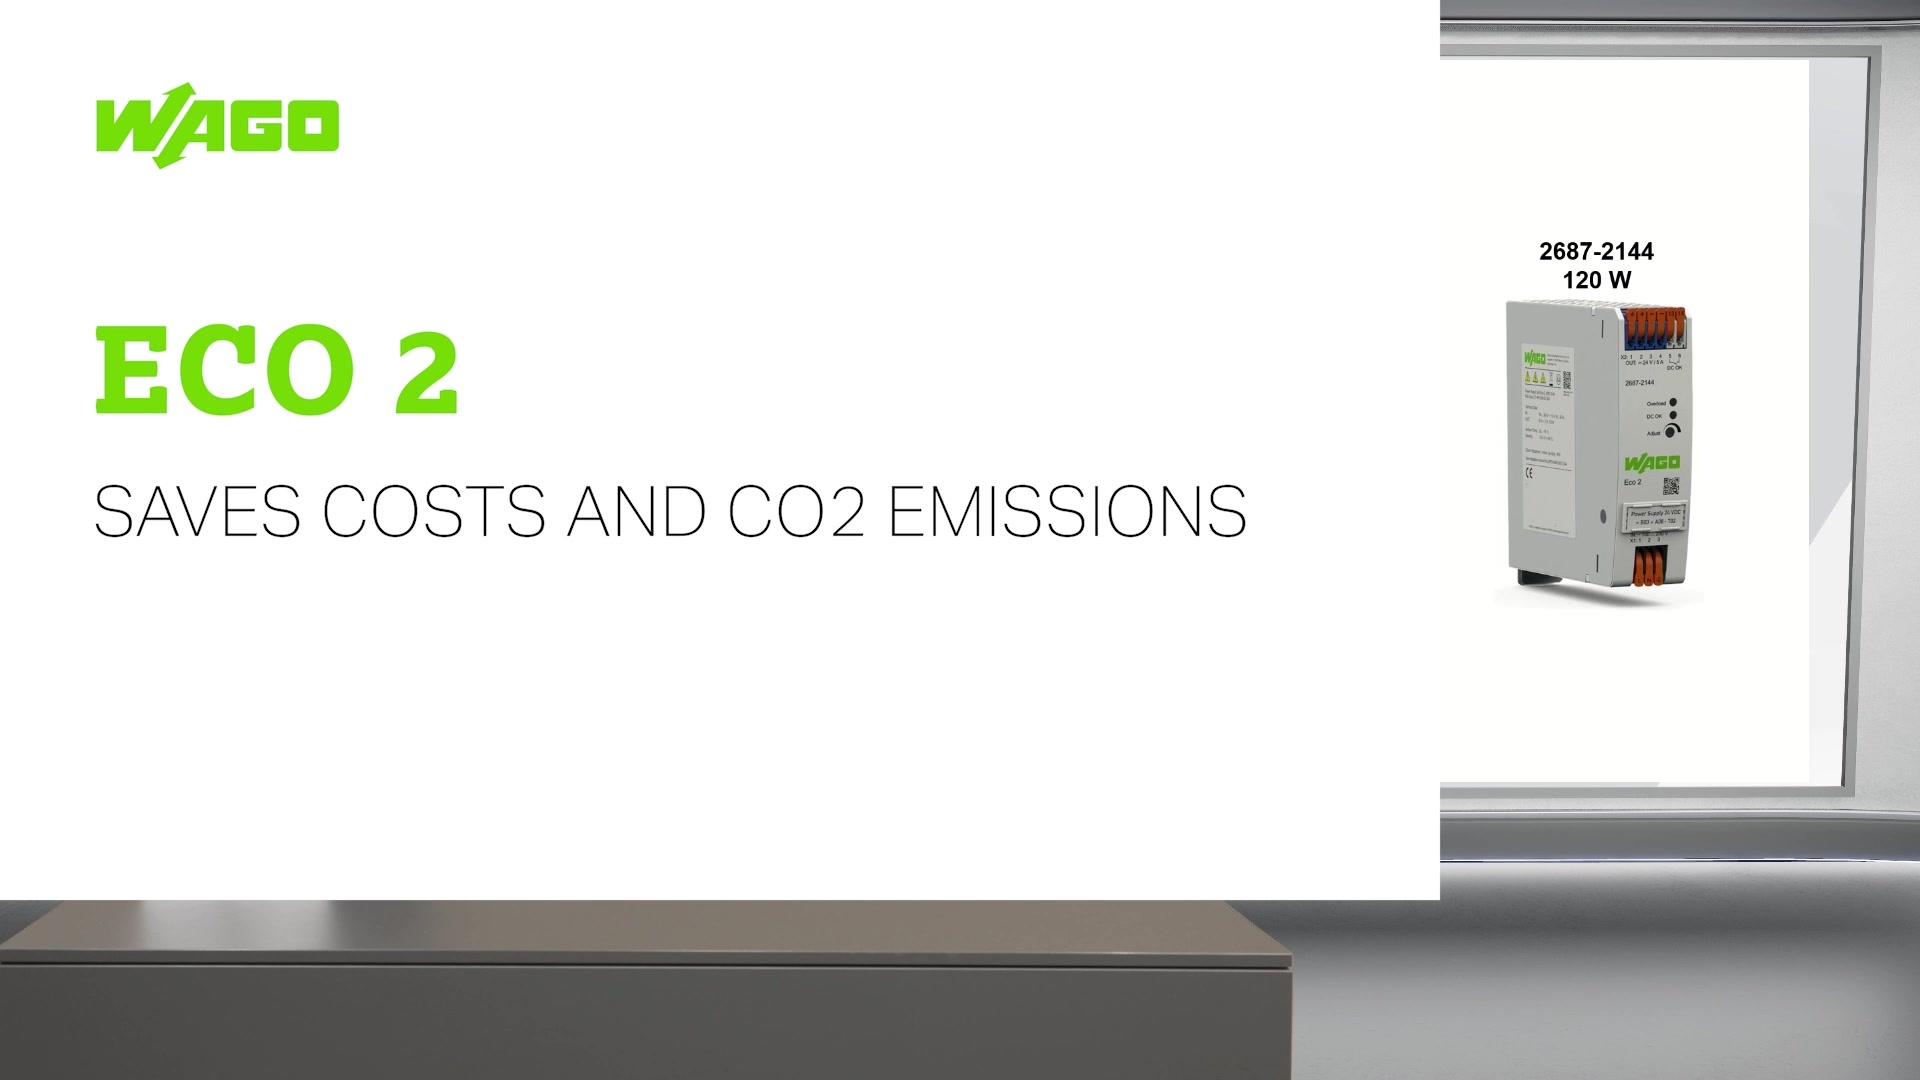 Eco 2经济型电源可节约成本并减少CO2排放